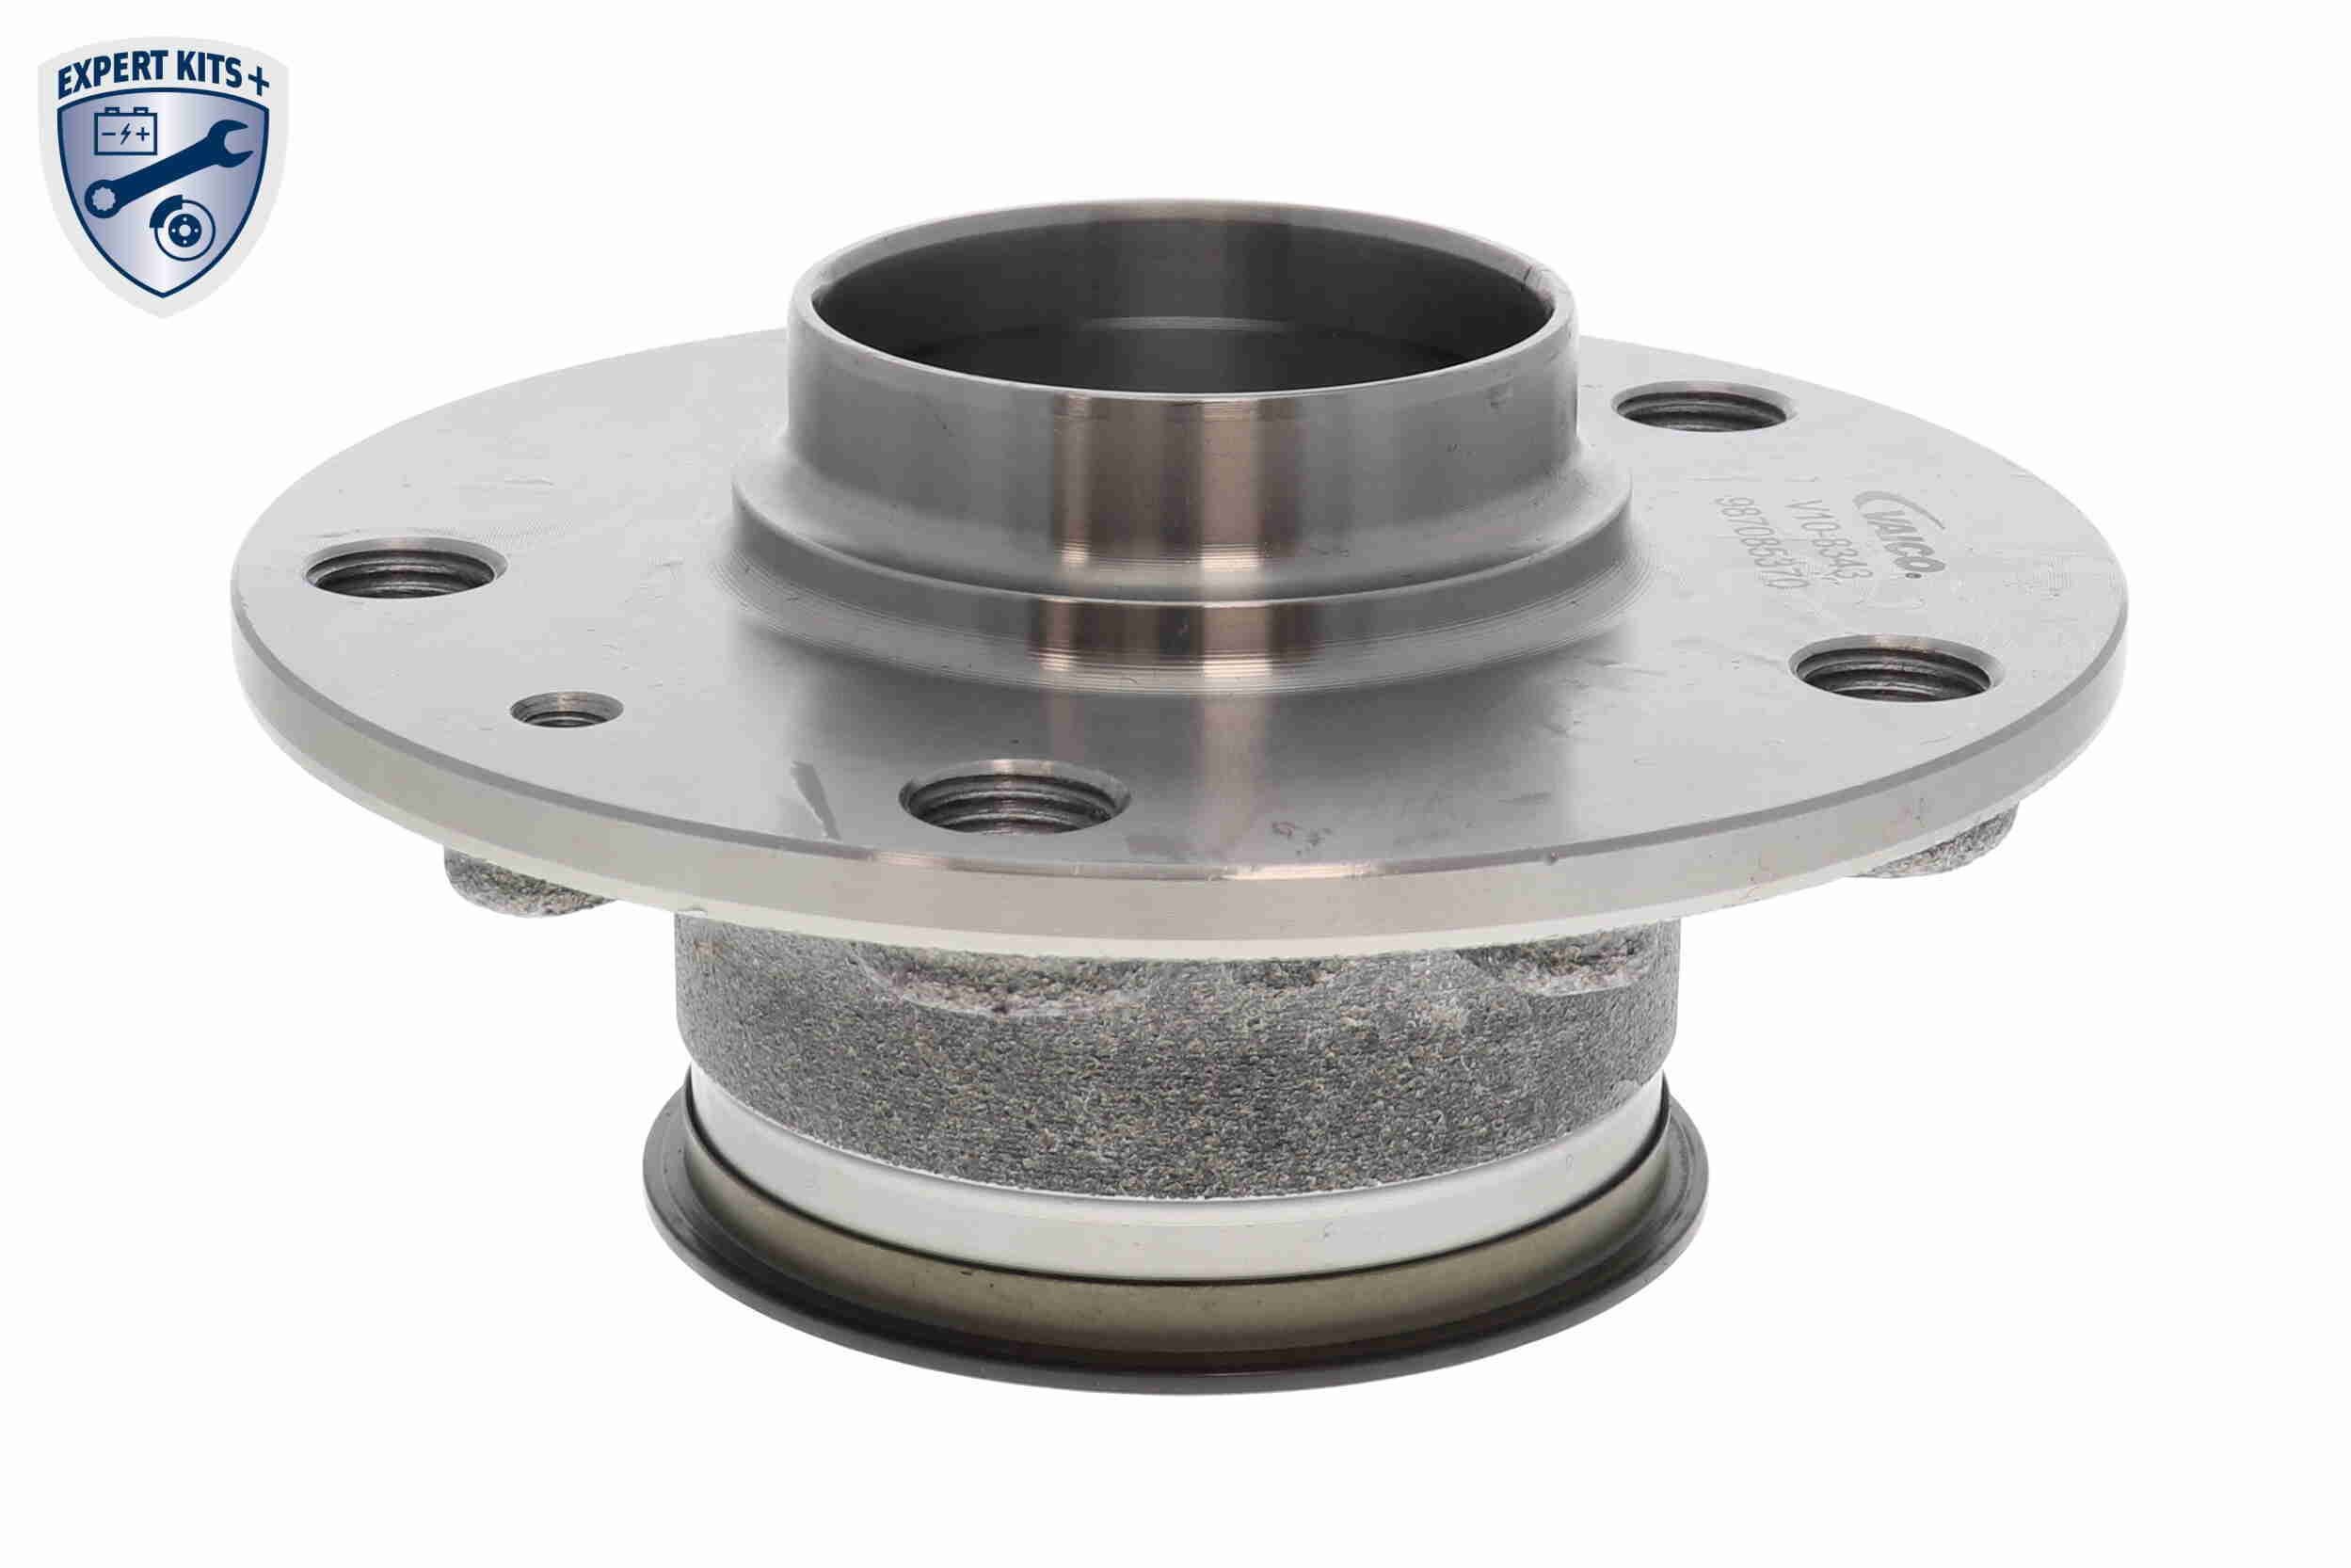 V10720296 Wheel hub bearing kit EXPERT KITS + VEMO V10-72-0296 review and test